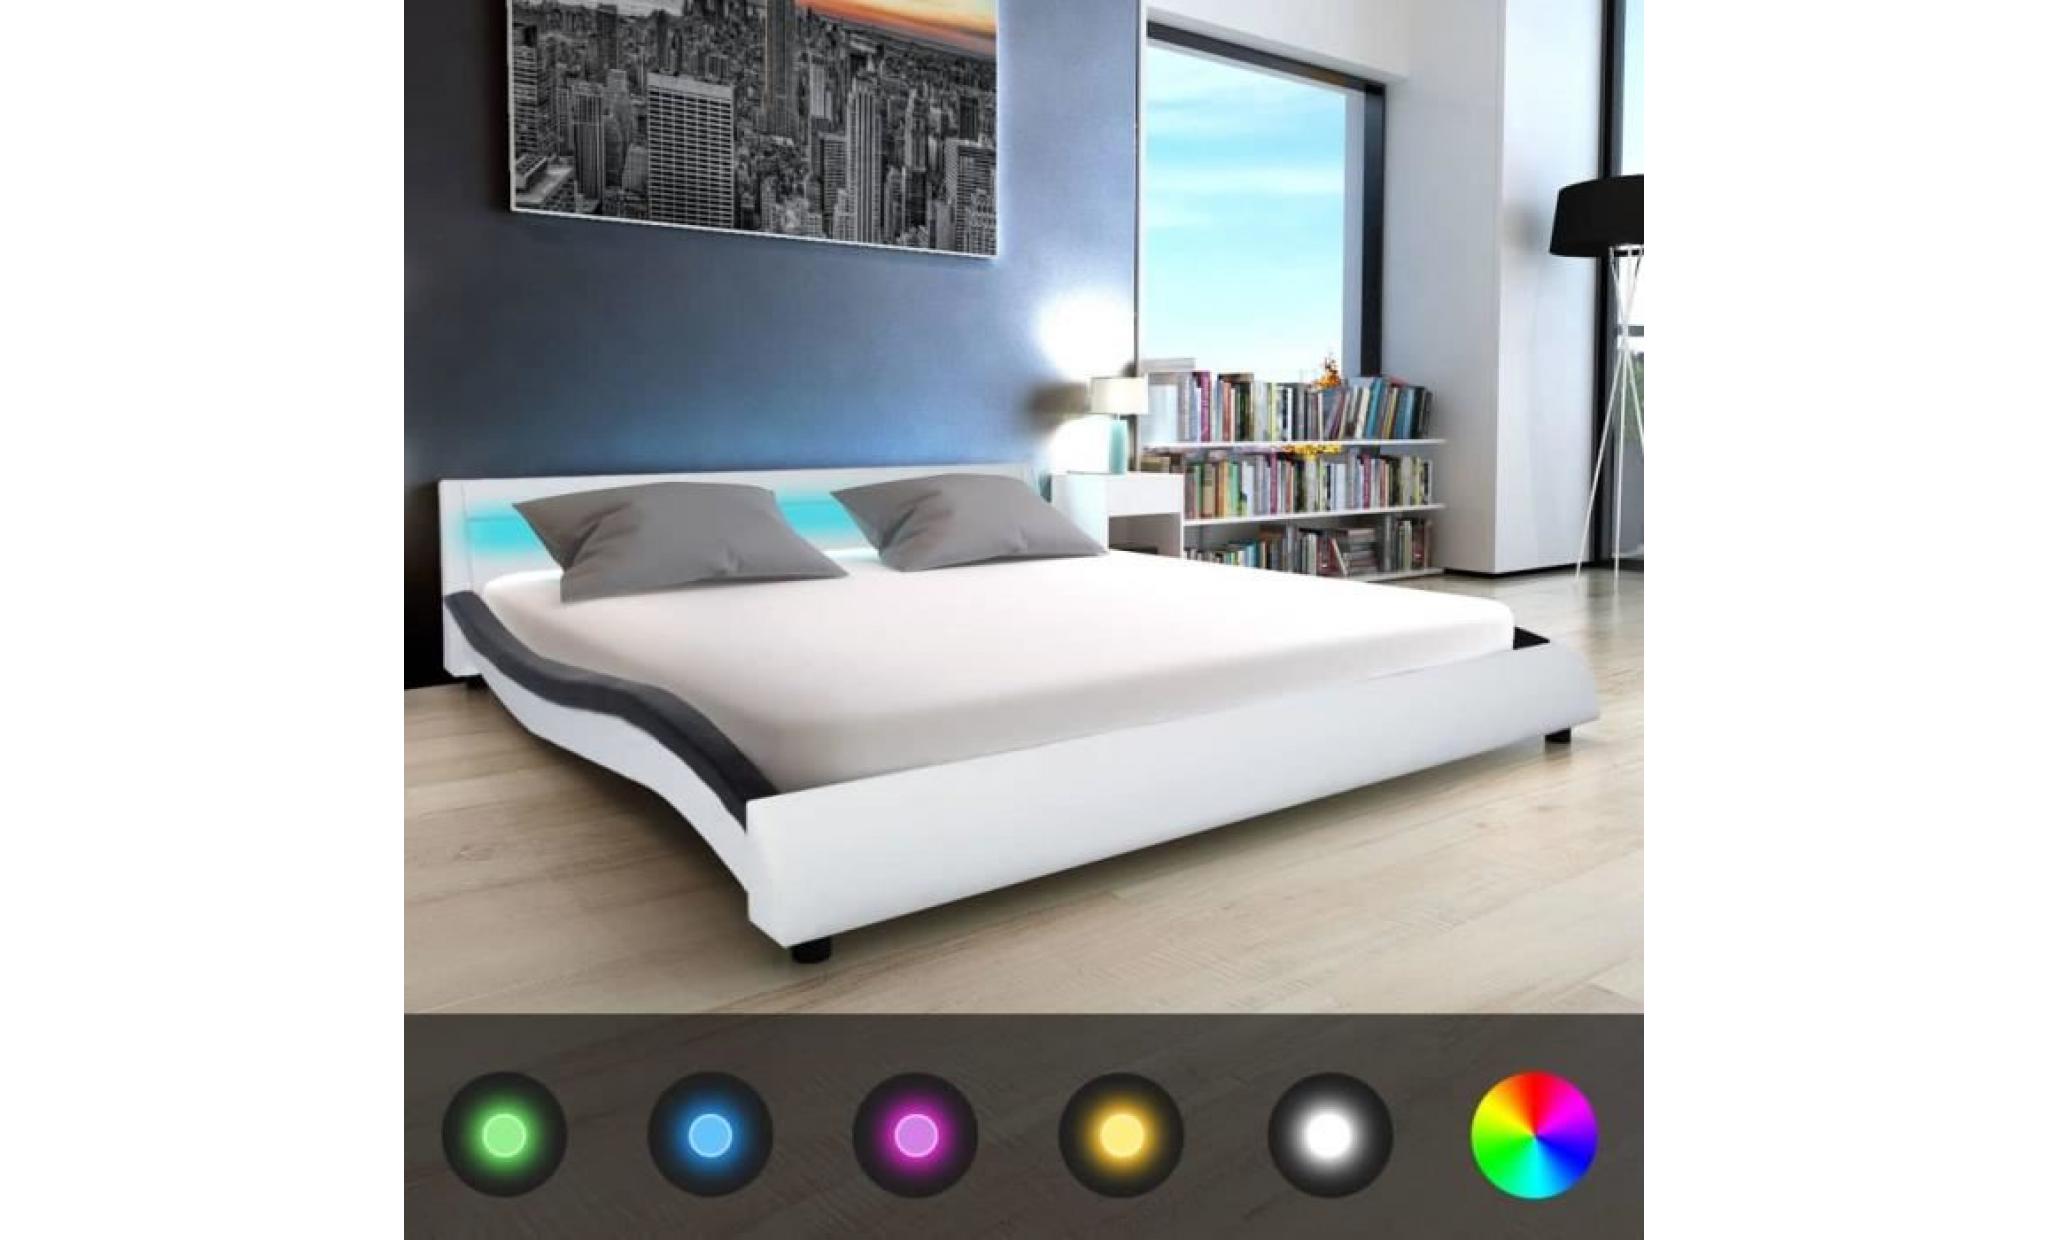 cadre de lit adulte contemporain structure métallique élégant dortoir chambre avec led190,5 x 226 x 56,cuir artificiel blanc et noir